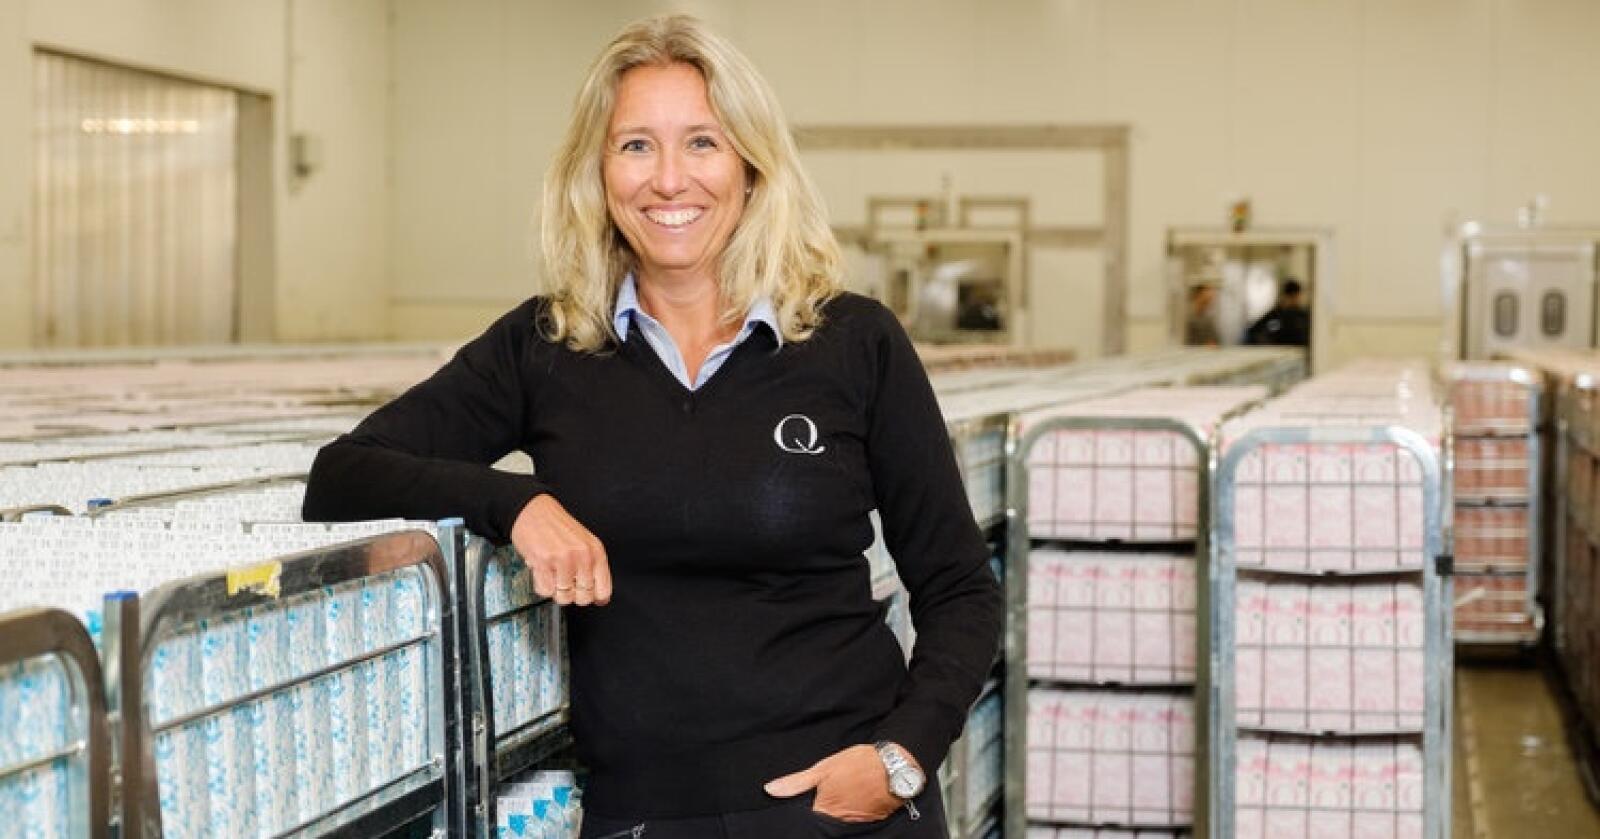 Q-sjef Kristine Aasheim har god grunn til å smile. Forbrukerne mener at Q-meieriene er Norges tredje mest bærekraftige merkevare. Foto: Tore Myrstad